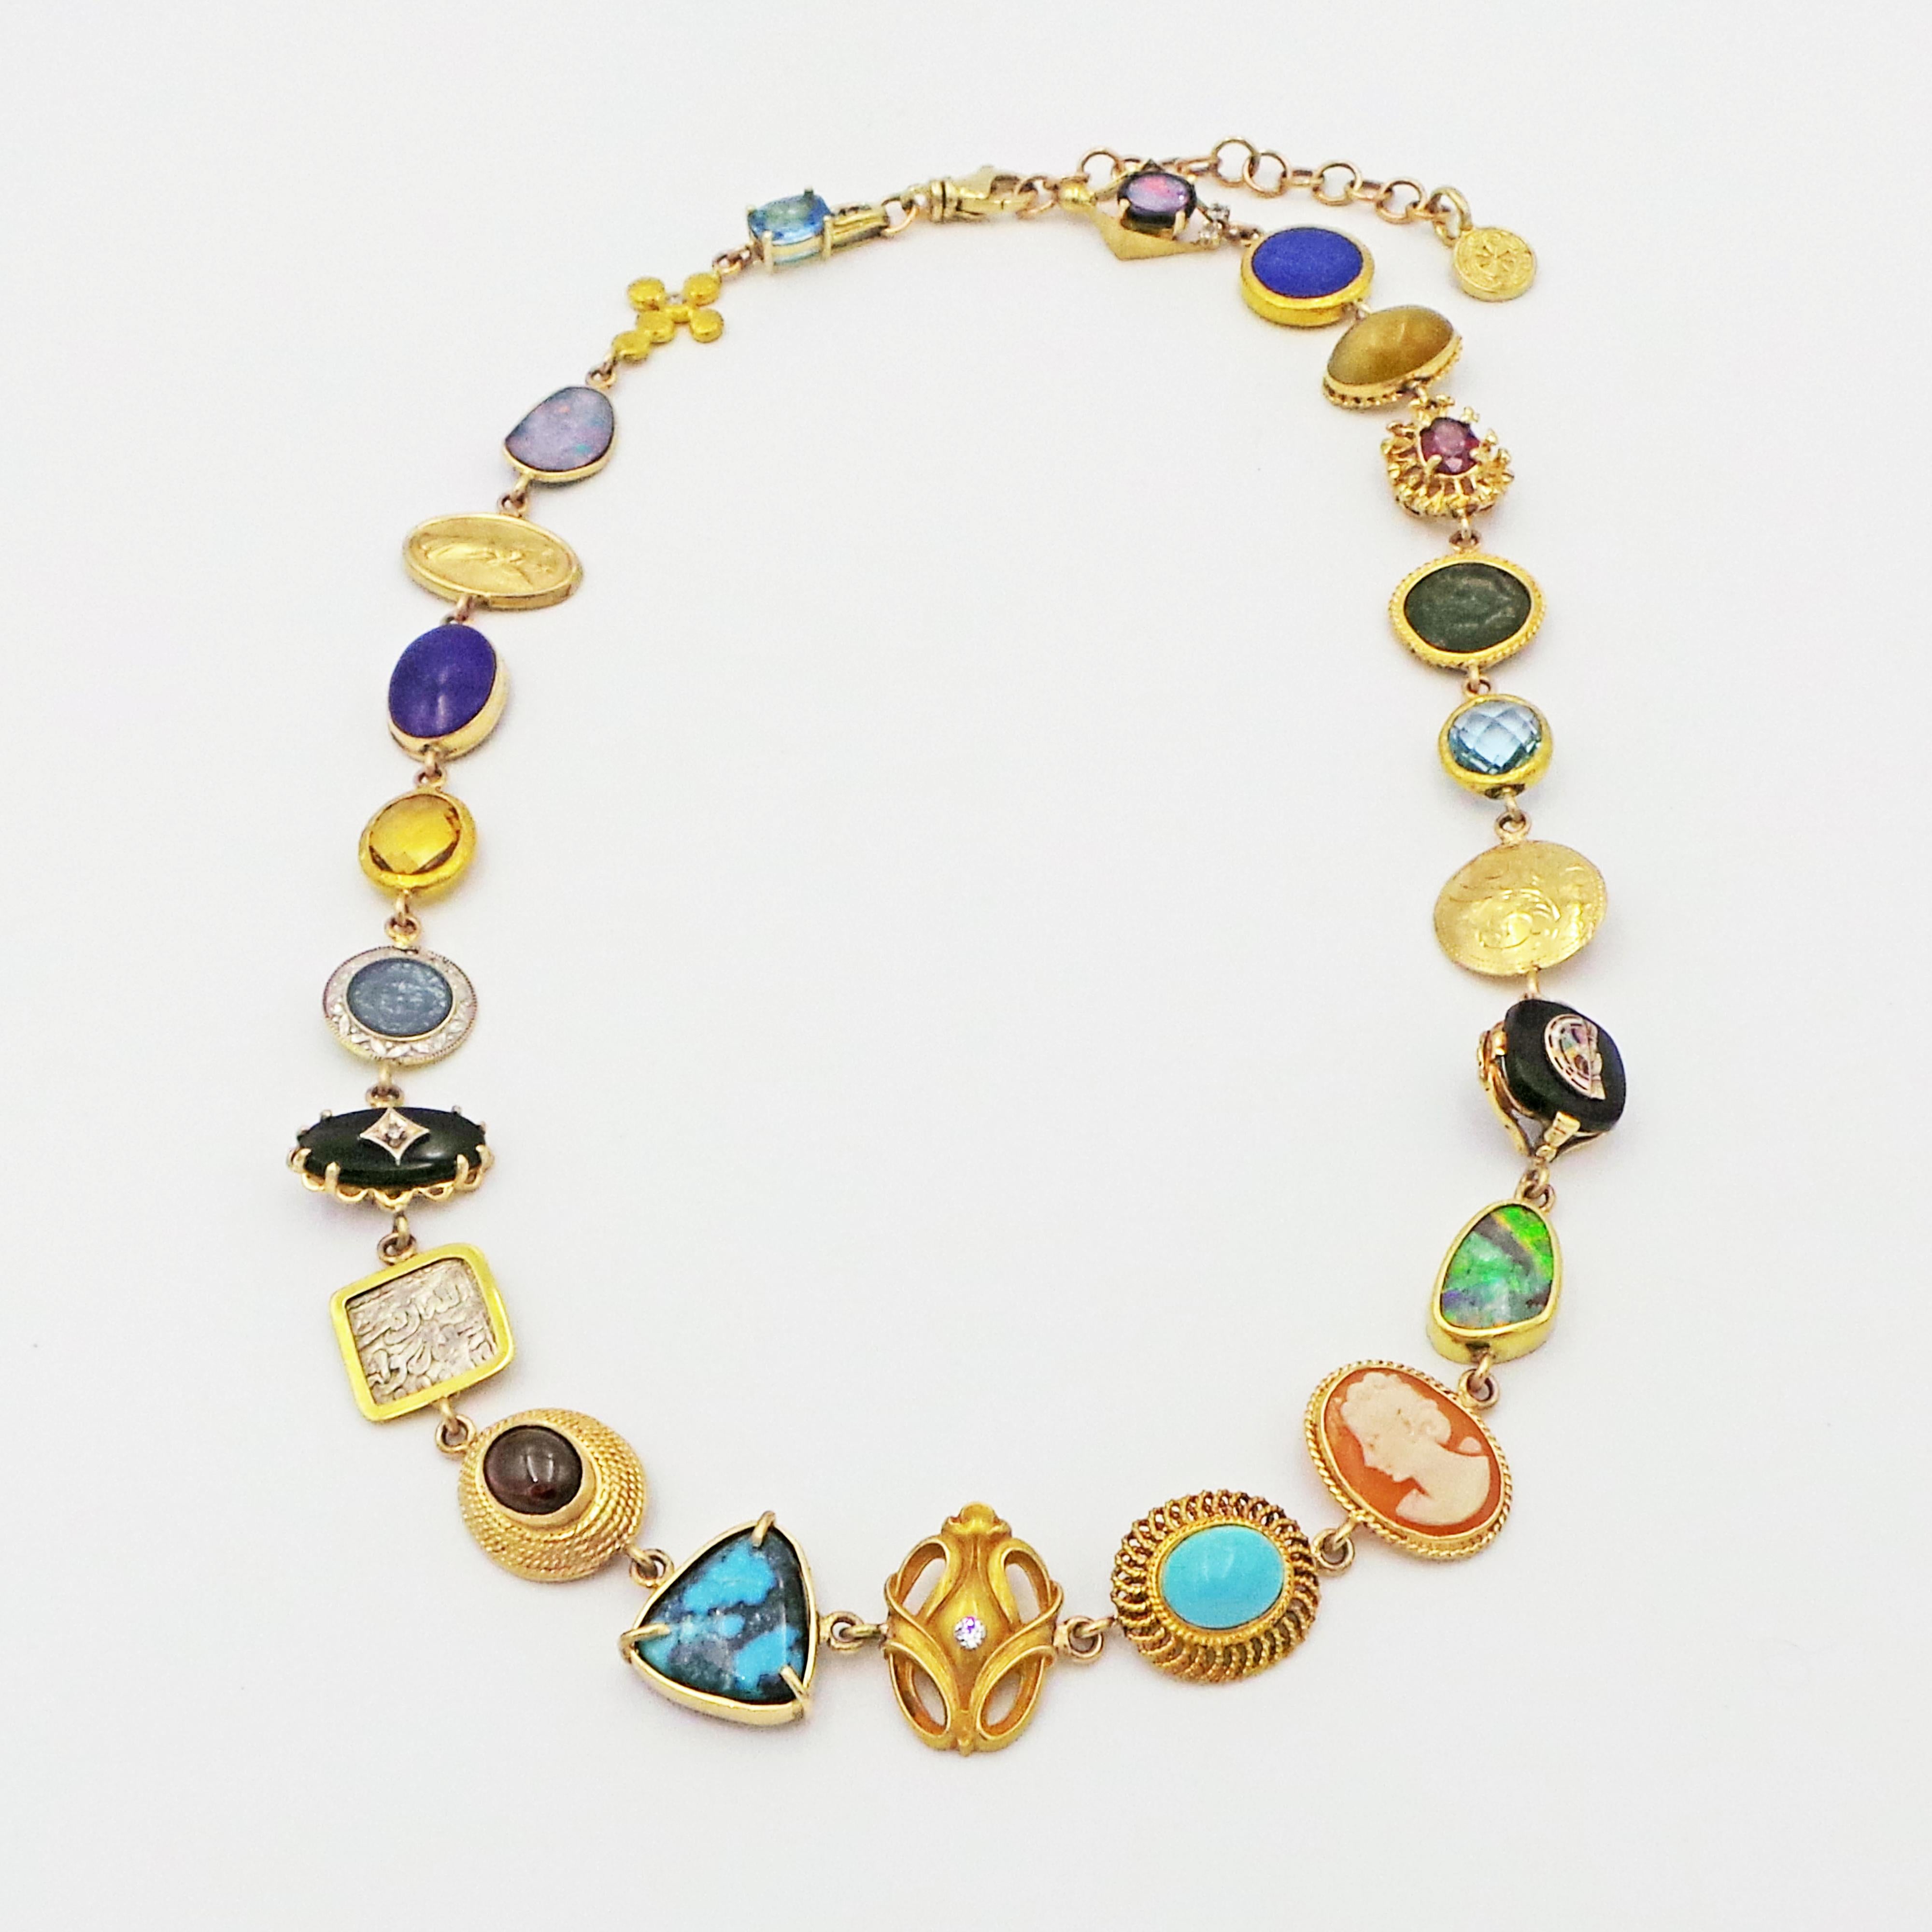 Unique en son genre, ce collier bohème est composé de plusieurs pierres précieuses, de pièces de joaillerie vintage et de pièces de monnaie anciennes serties dans de l'or jaune 14k. Parmi les 23 pièces étonnantes, citons : topaze bleue, opale